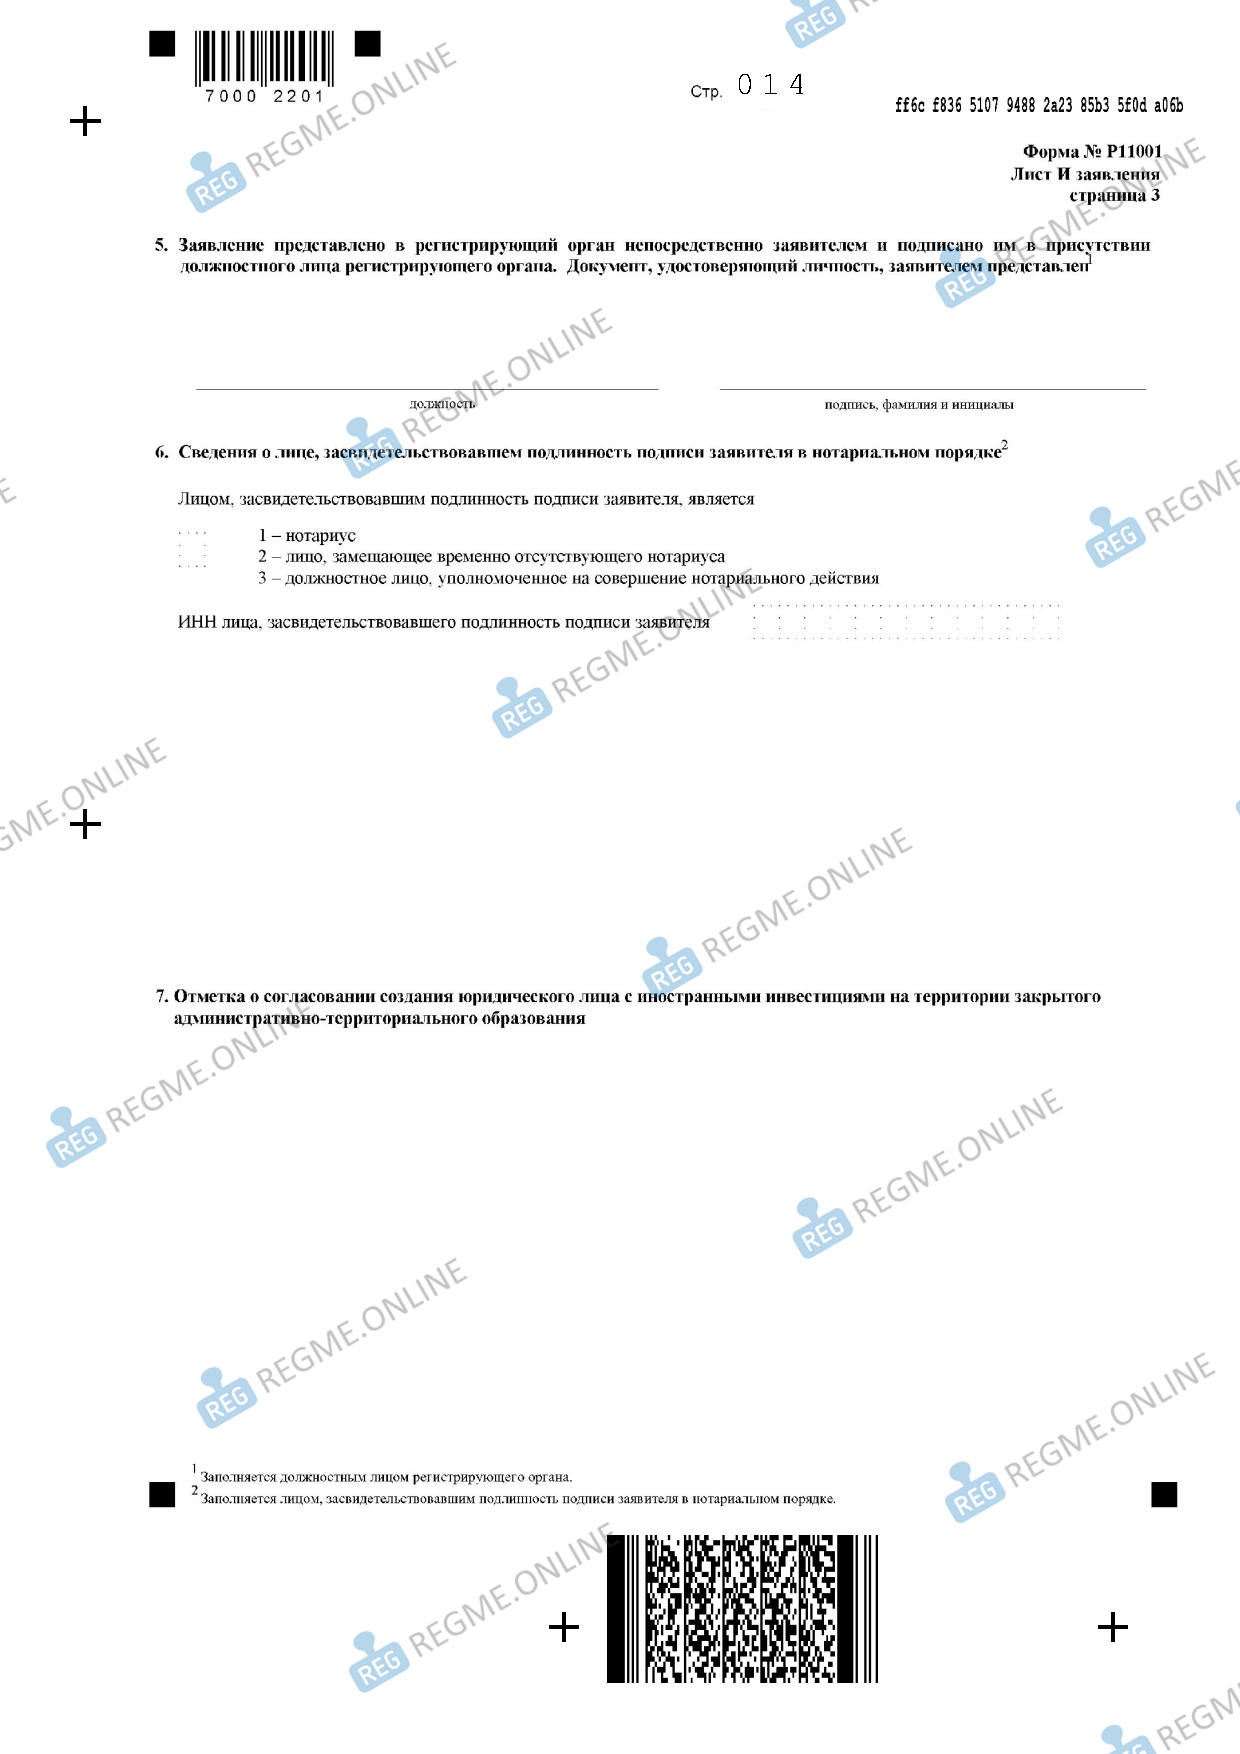 Инструкция по регистрации ооо с двумя учредителями